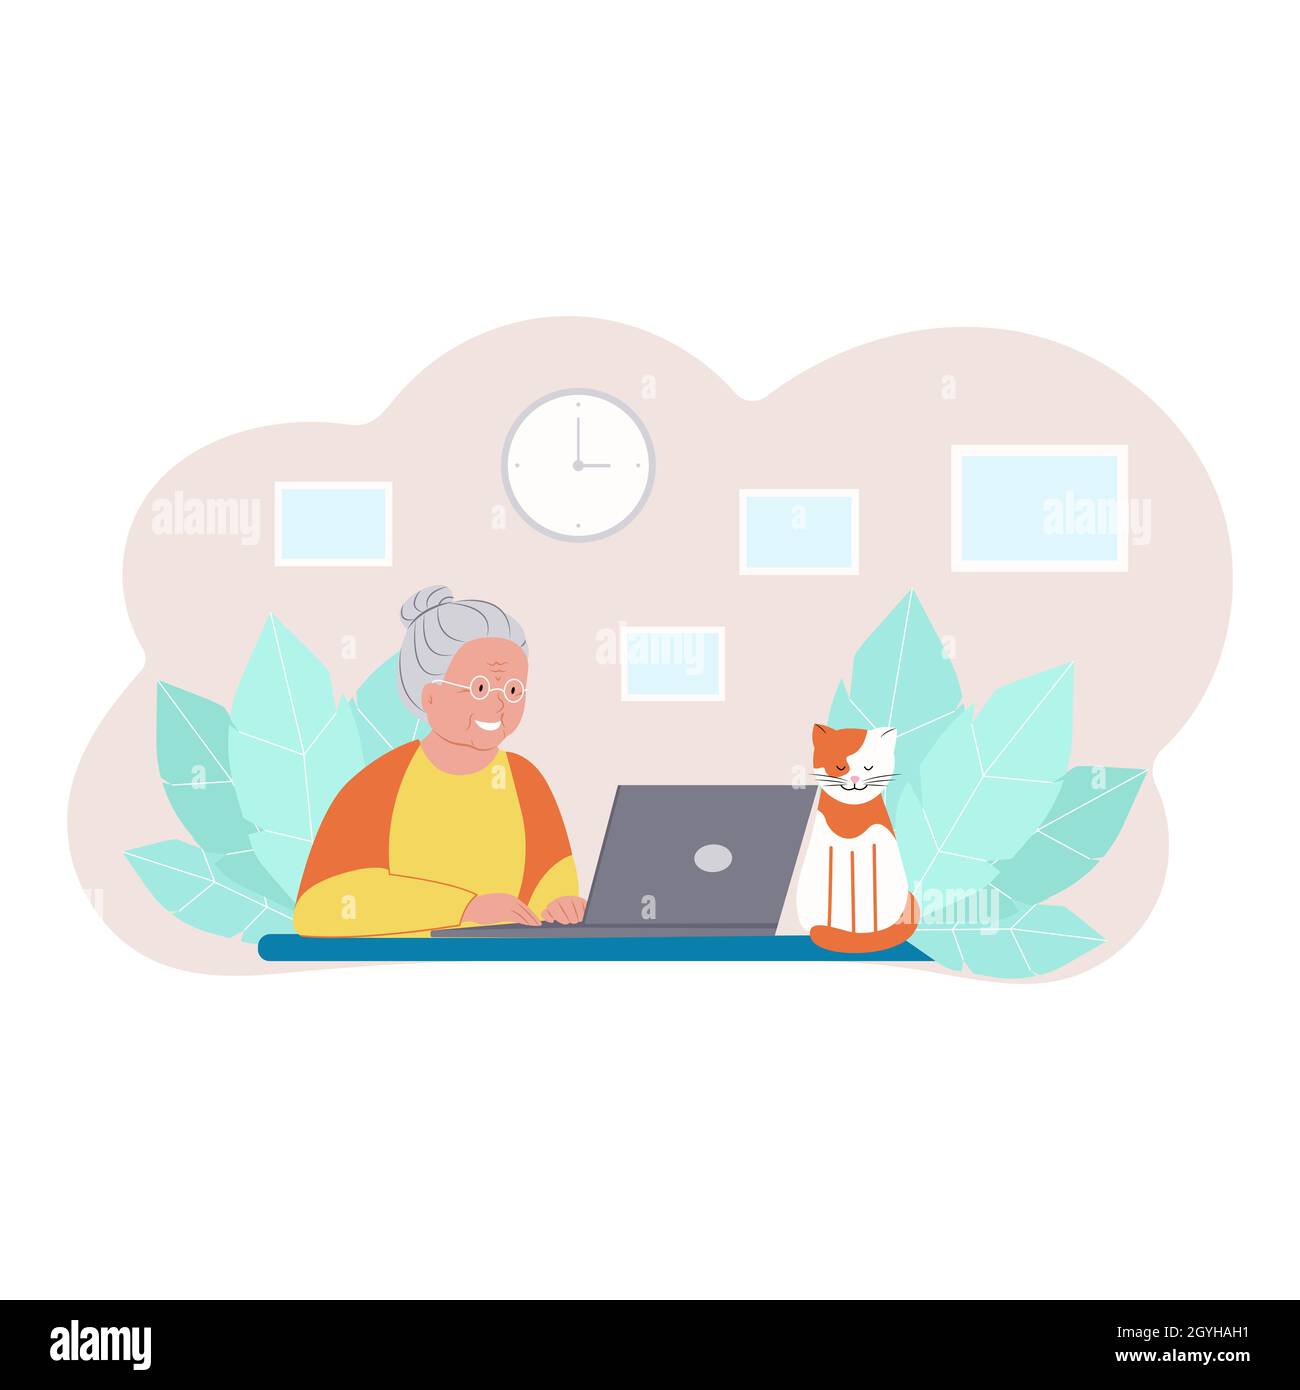 Glückliche Großmutter mit Laptop. Ältere Frau, die am Laptop arbeitet, Hauskatze. Vektorgrafik im flachen Stil Stock Vektor